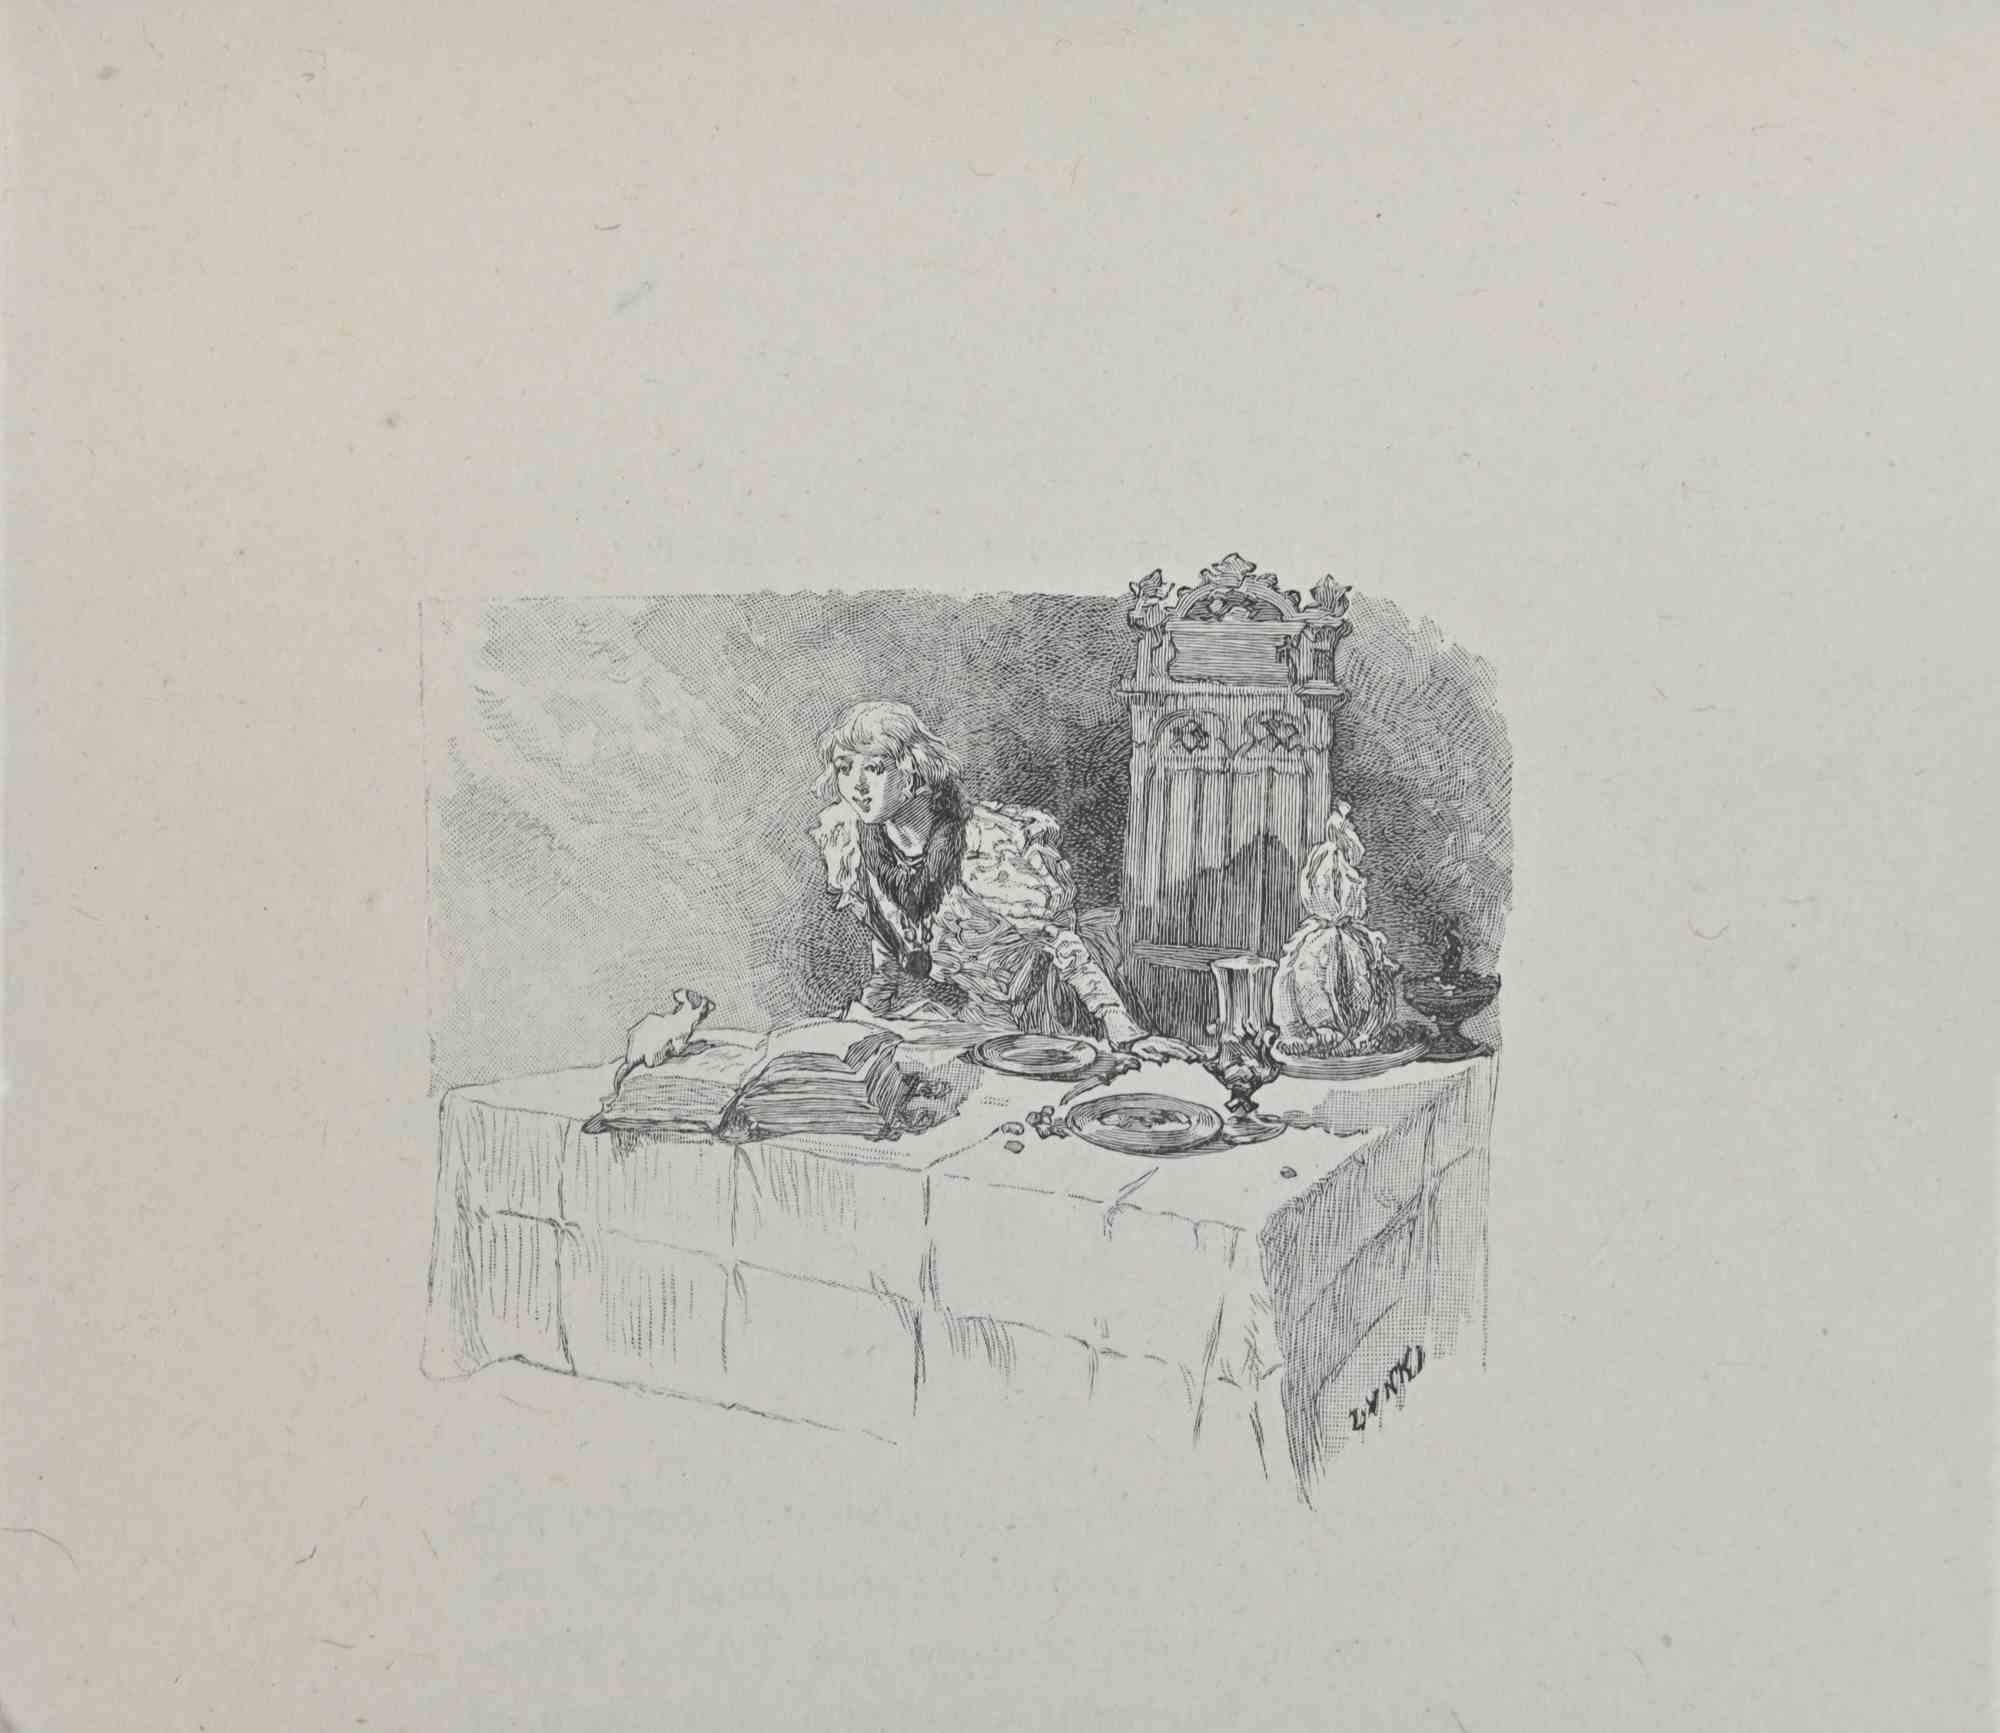 Petits Contes à ma Sœur ist eine Lithographie auf Papier von Hégésippe Moreau, datiert 1838.

Das Kunstwerk  ist in gutem Zustand.

Hégésippe Moreau (1810-1838) war ein französischer Lyriker. Der romantische Mythos wurde durch die Veröffentlichung